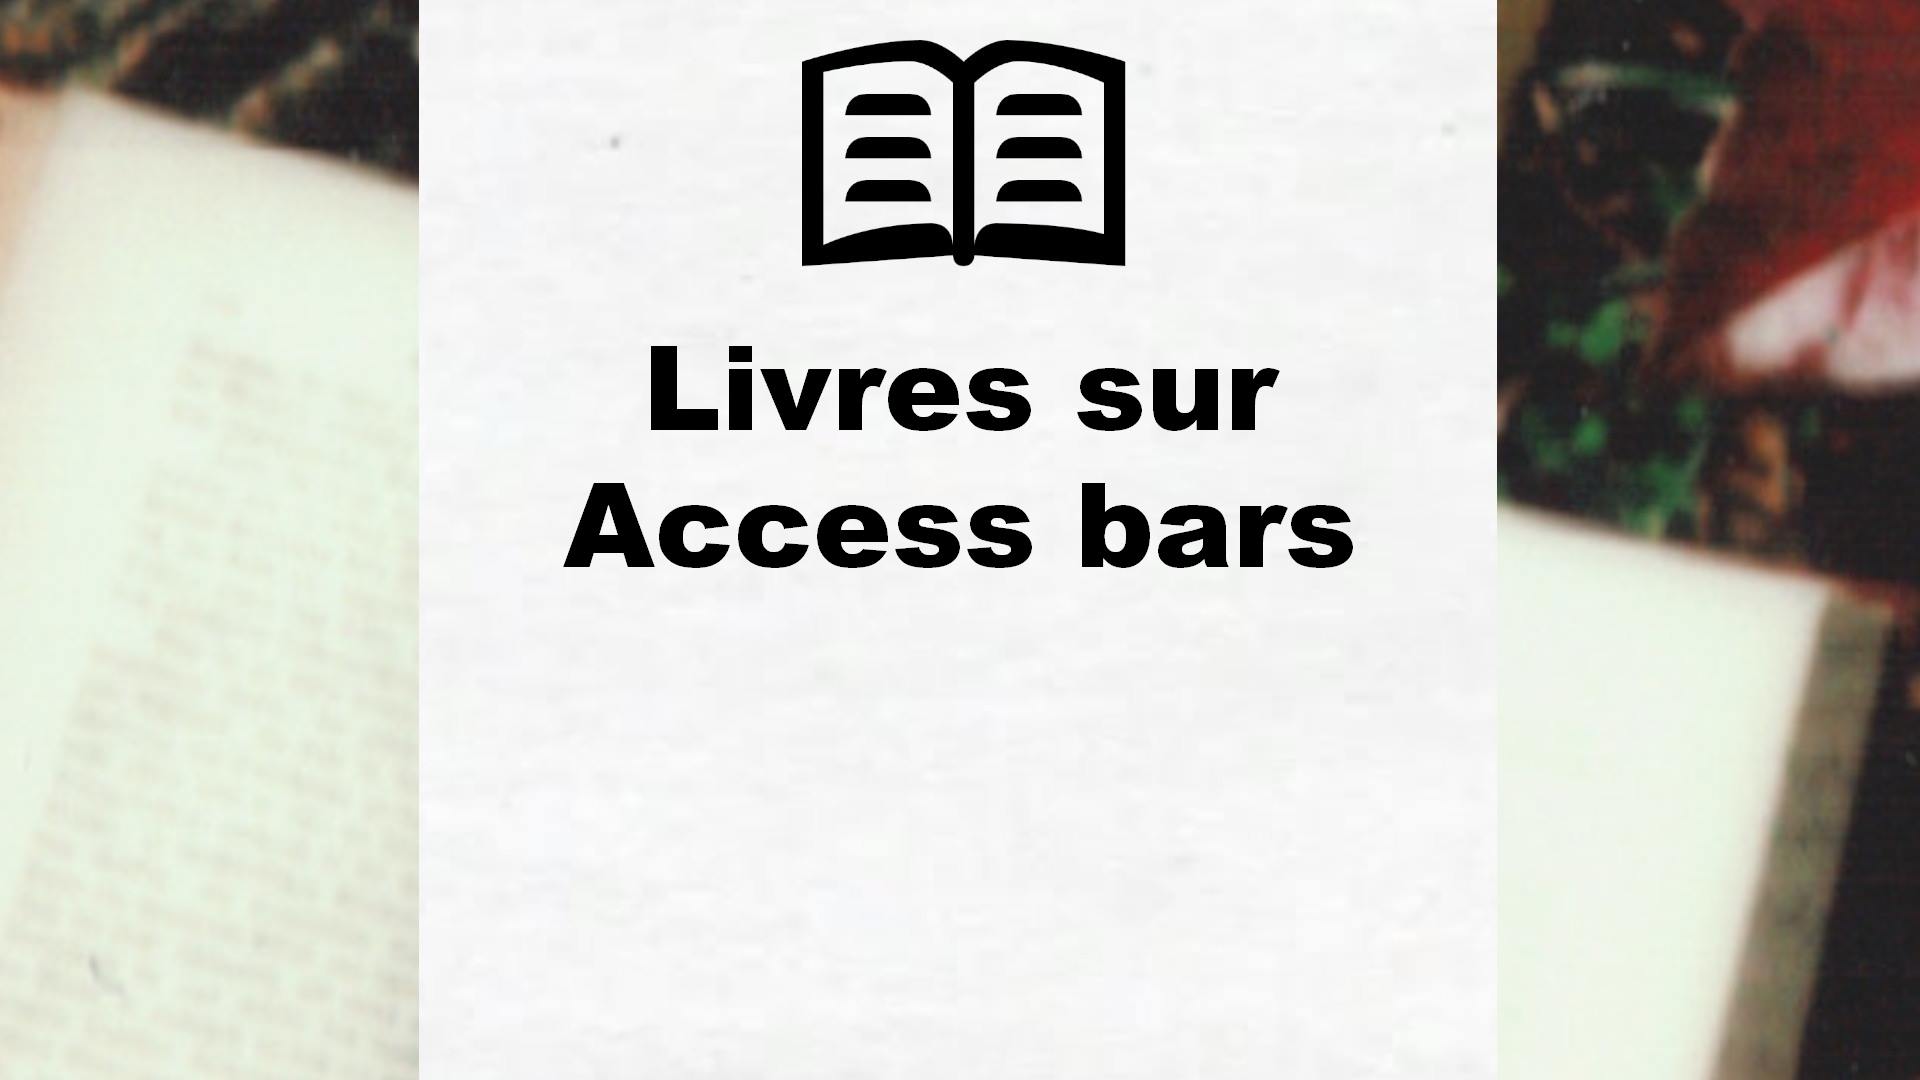 Livres sur Access bars